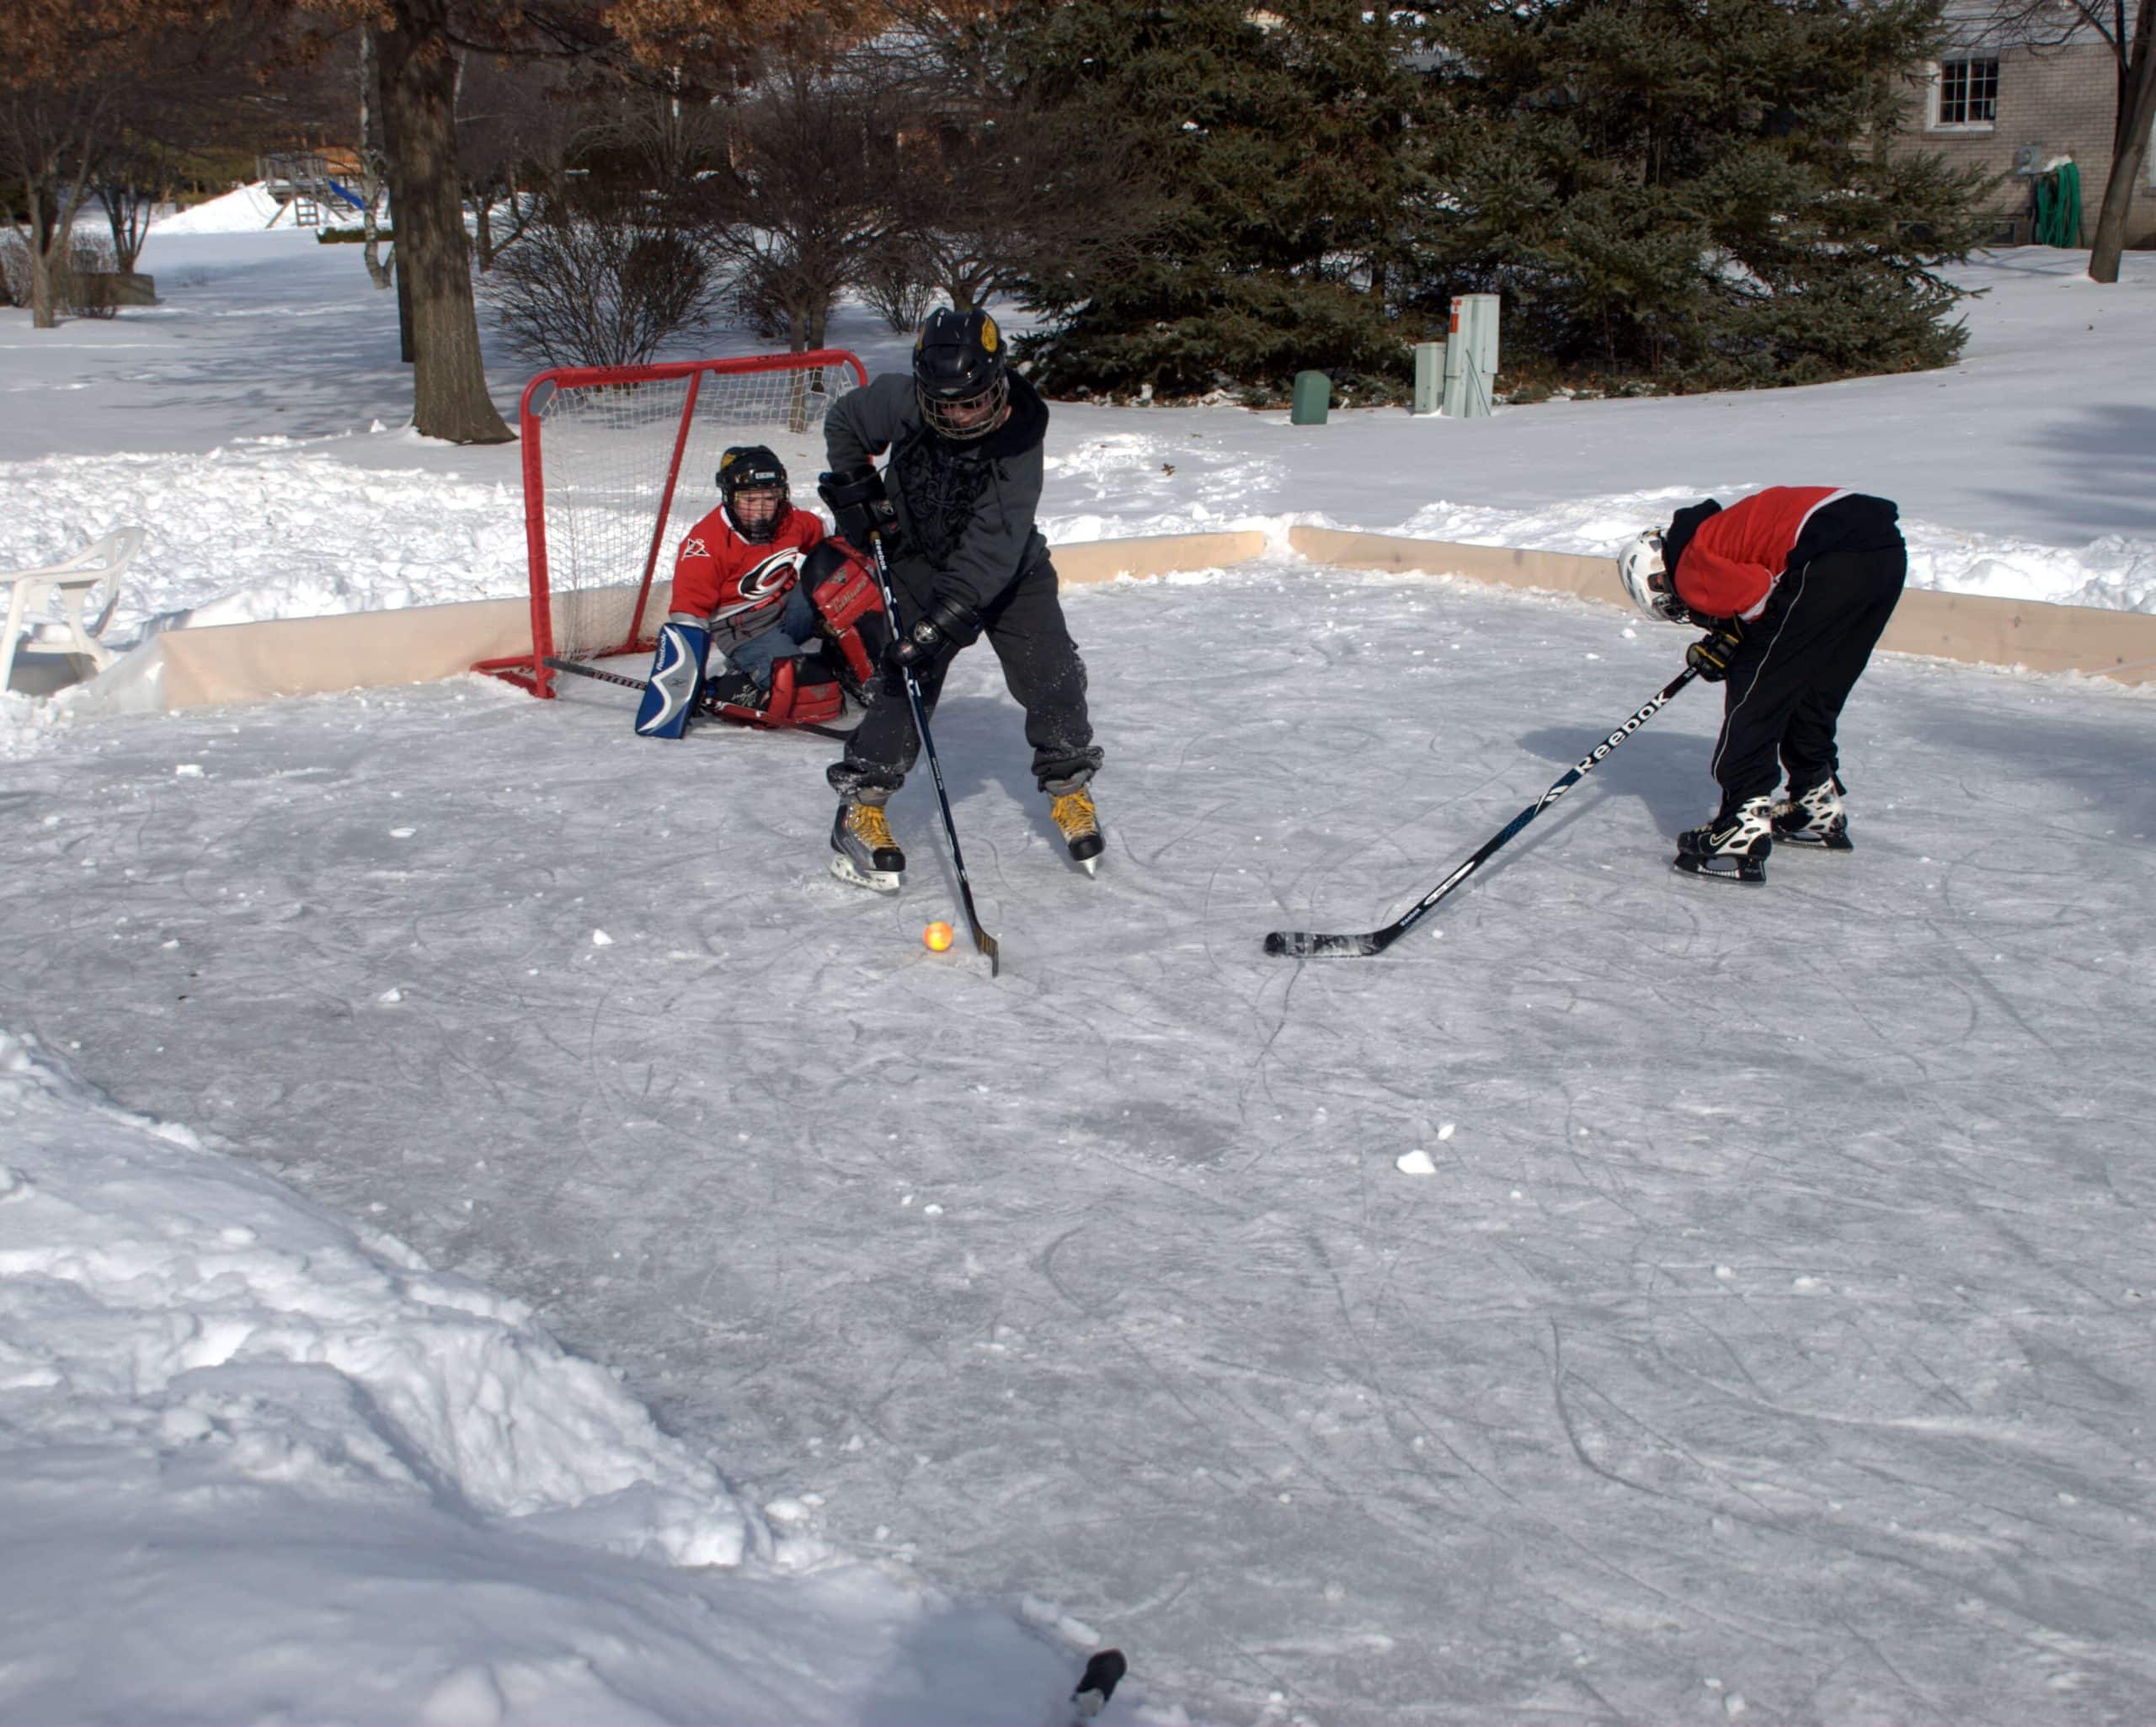 Hockey-match-on-a-backyard-ice-rink